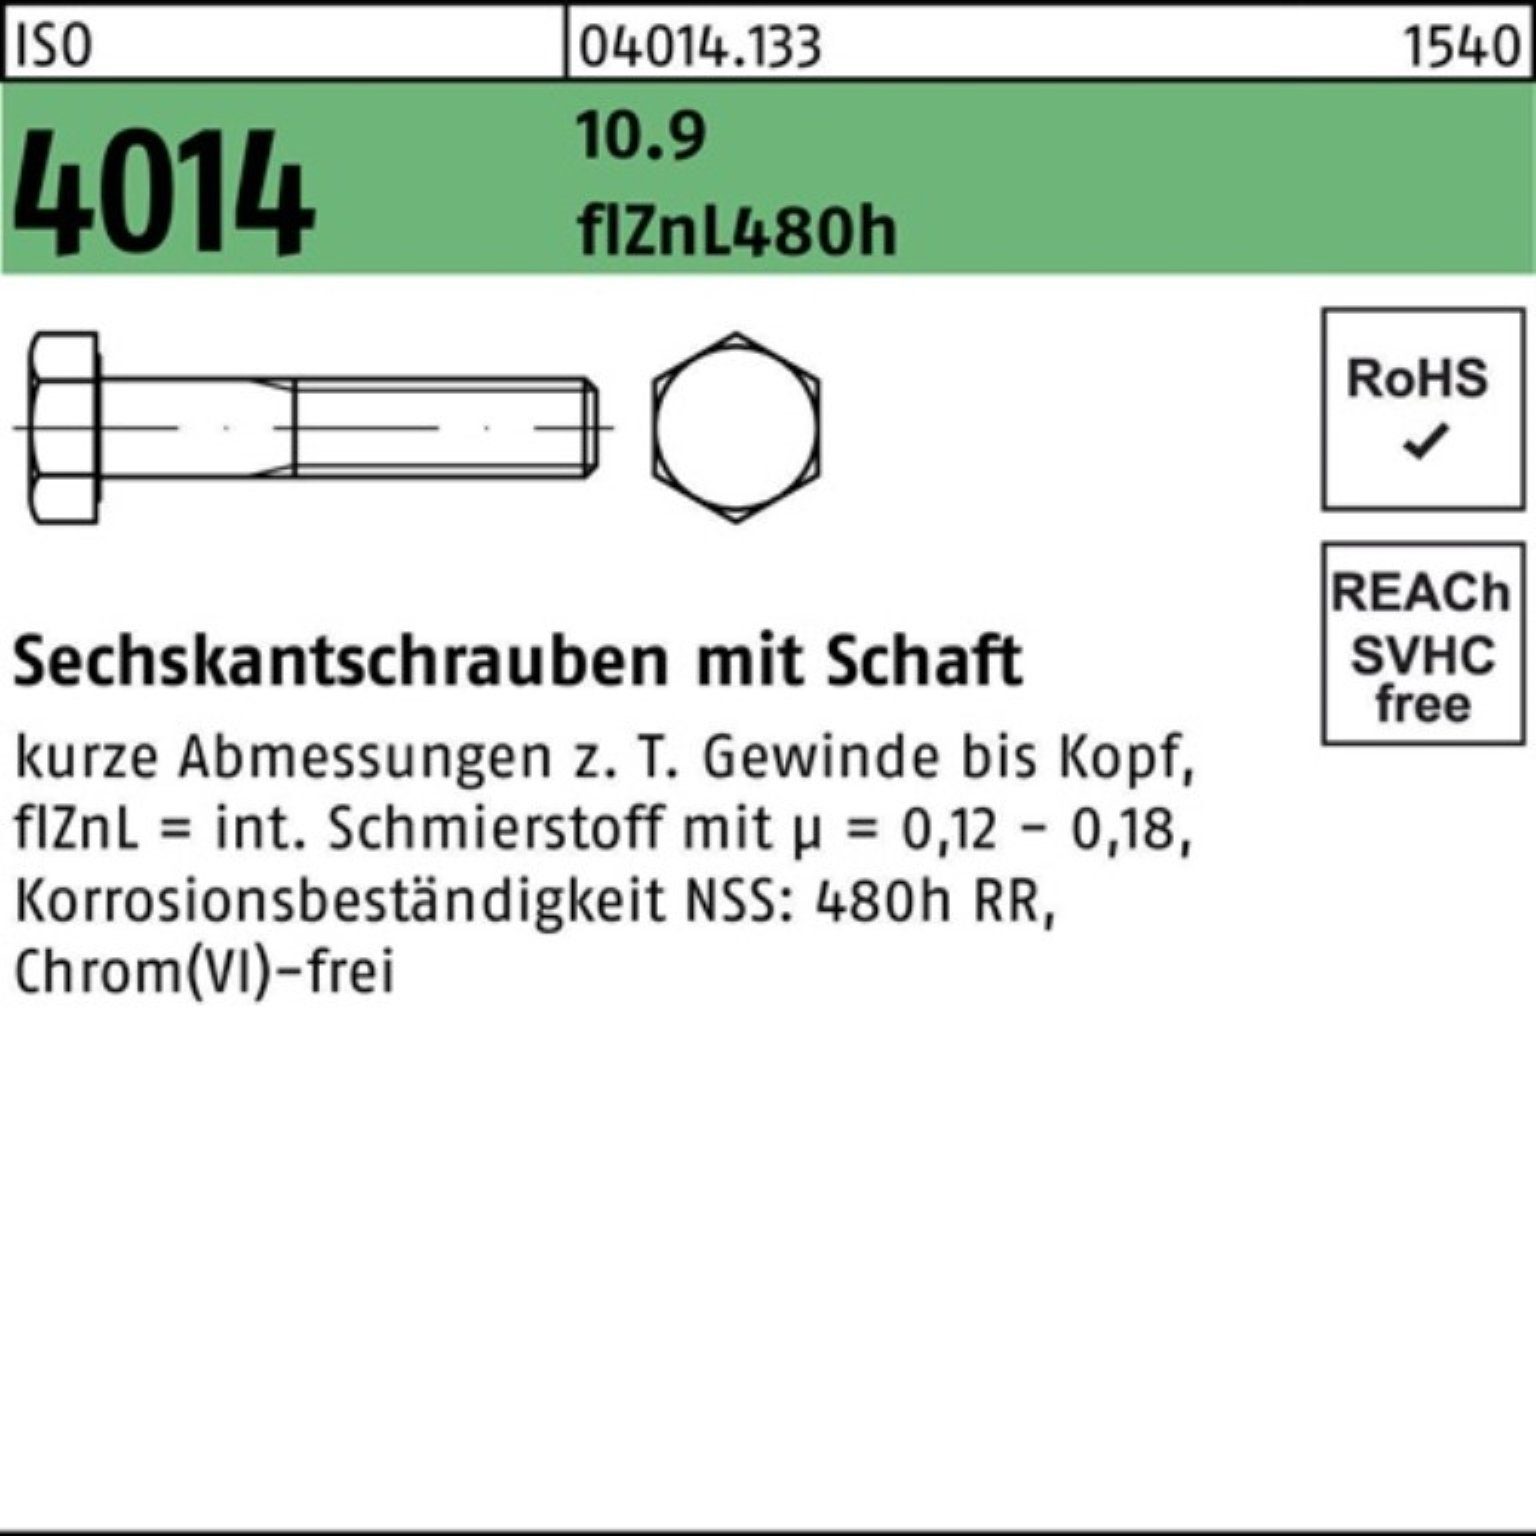 Bufab Sechskantschraube 100er zinklamellen ISO Sechskantschraube 4014 Pack Schaft 10.9 45 M10x